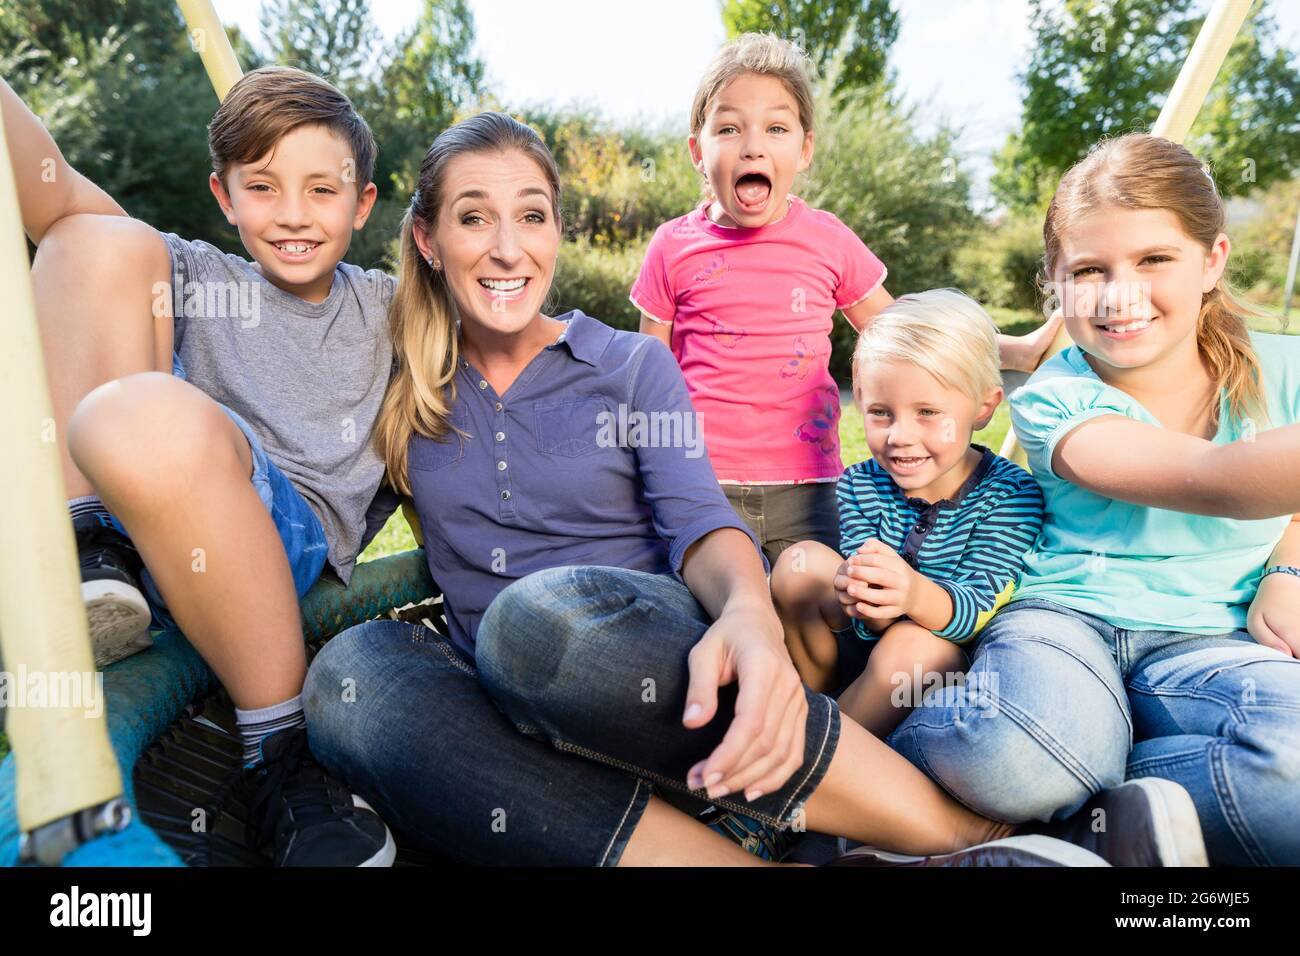 Familie mit Mutter, Söhnen und Töchtern, die gemeinsam im Freien Fotos machen Stockfoto